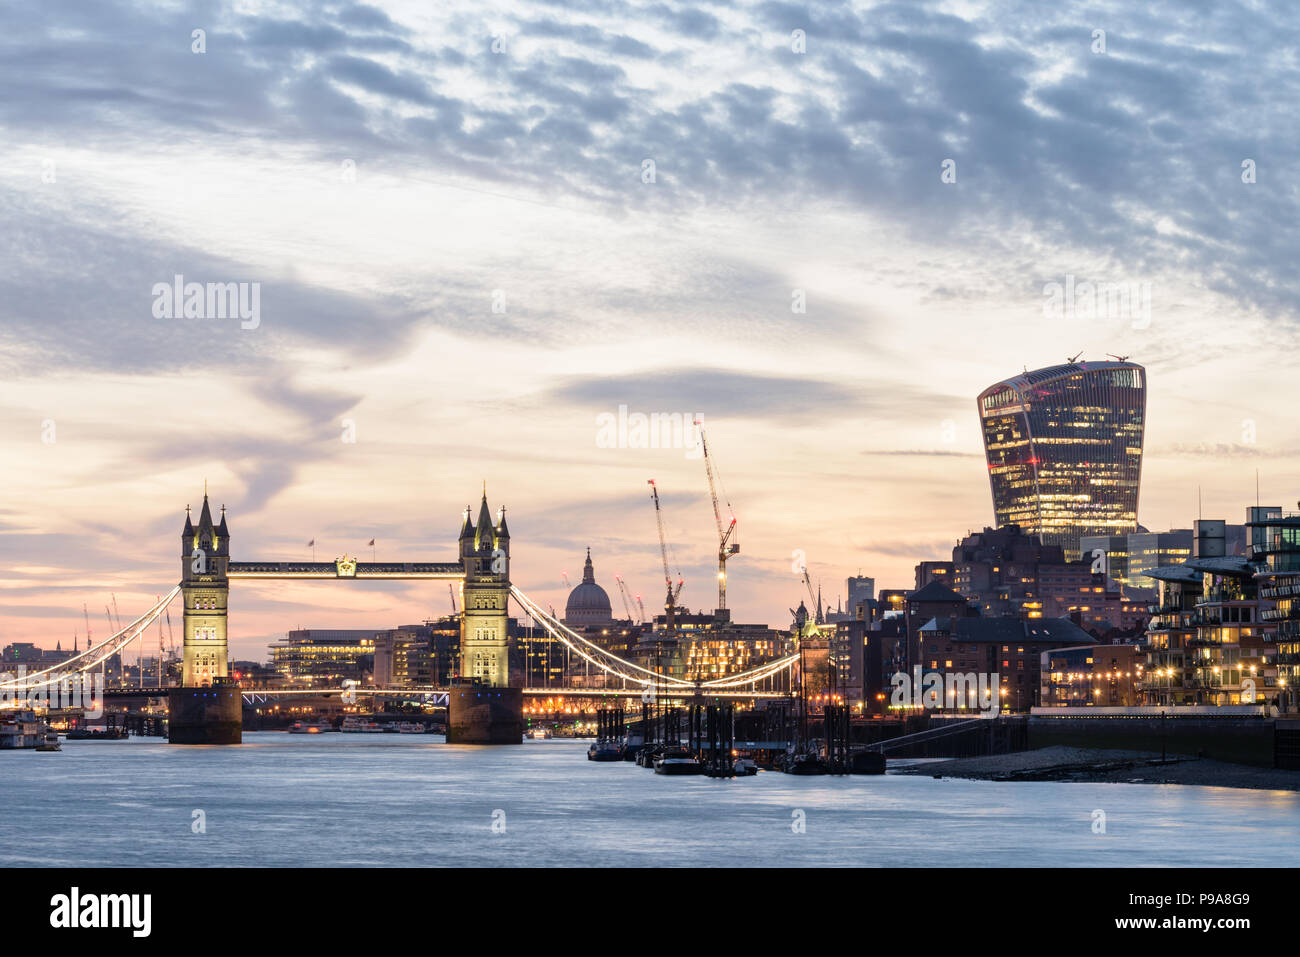 Vue de la Tamise à Bermondsey, London, Tower Bridge, le walkie talkie et autres bâtiments riverside allumé au coucher du soleil avec un ciel orange Banque D'Images